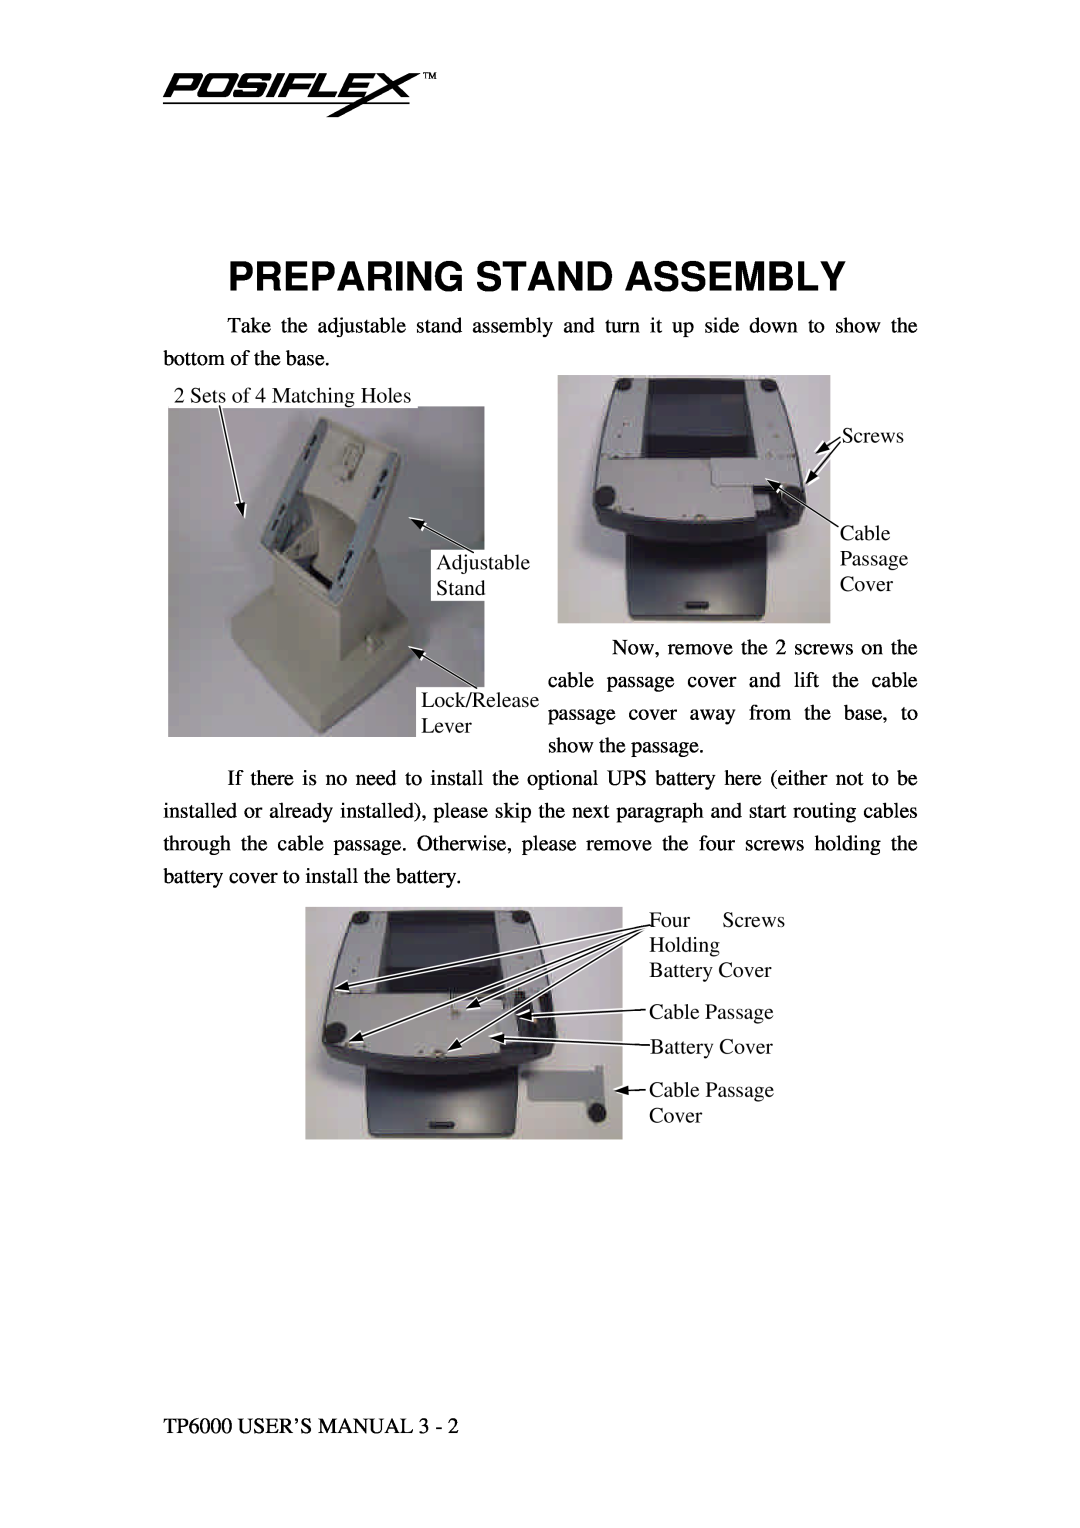 Mustek TP-6000 user manual Preparing Stand Assembly 